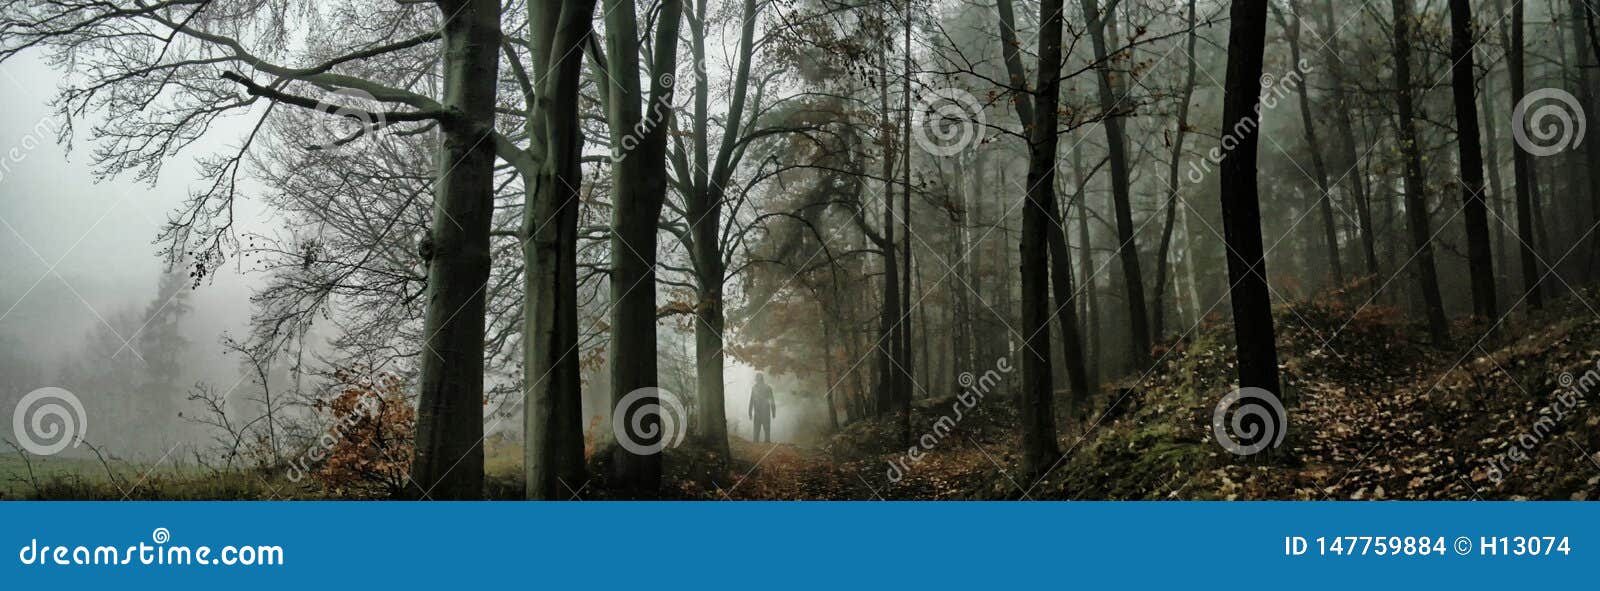 dark creepy foggy forest